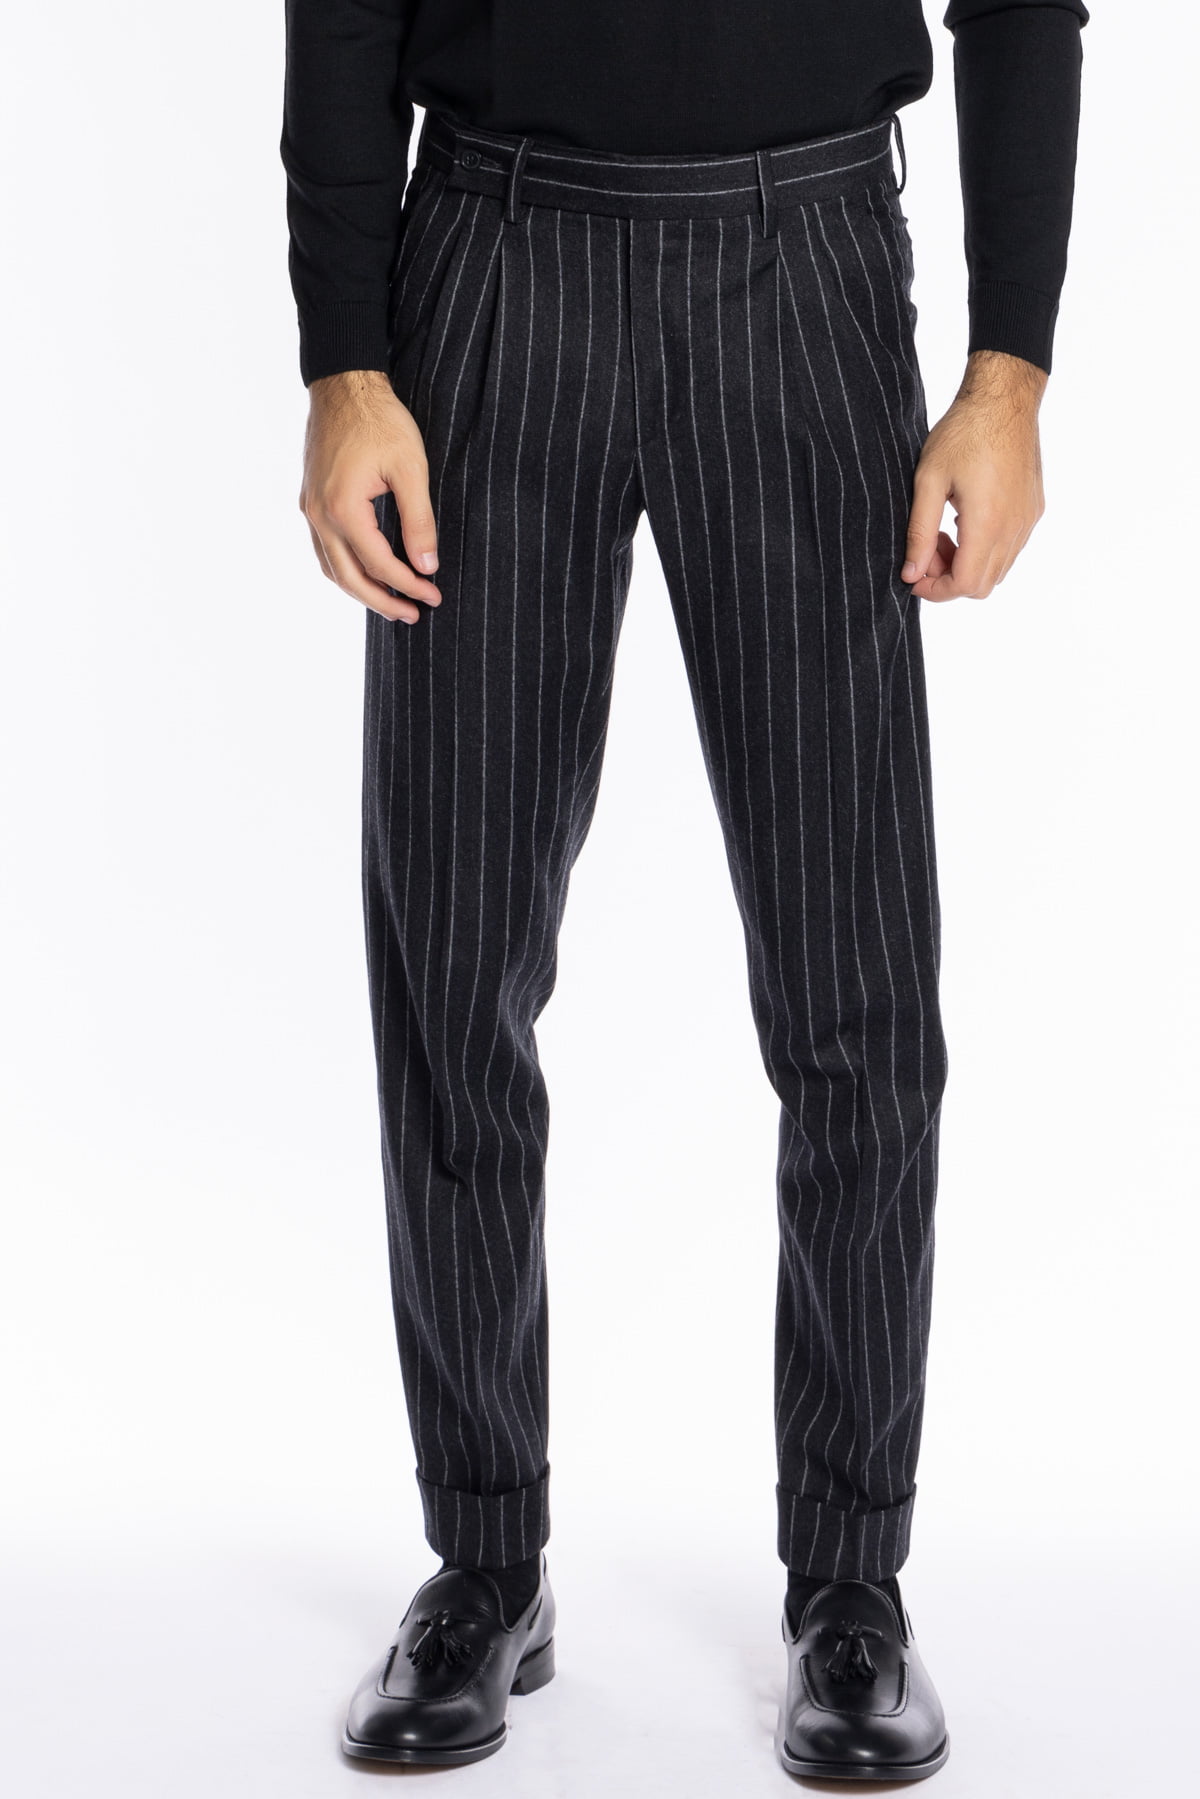 Pantalone uomo nero gessato in lana e cashmere chiusura prolungata doppia pinces Bristol Tessuti Napoli